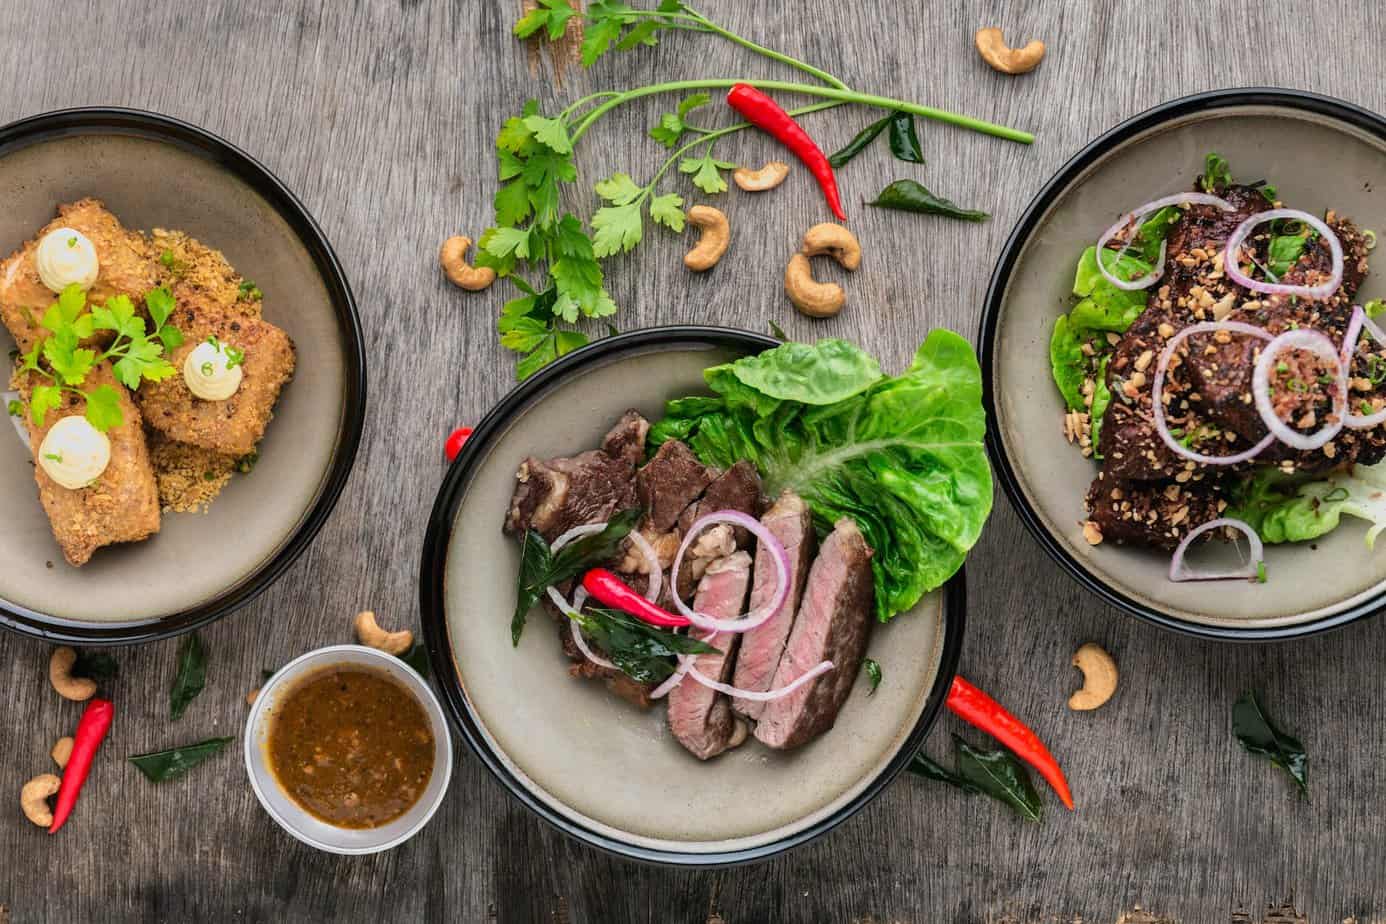 Popularne hashtagi żywnościowe – które z nich warto sprawdzić podczas poszukiwań inspiracji kulinarnych na Instagramie?